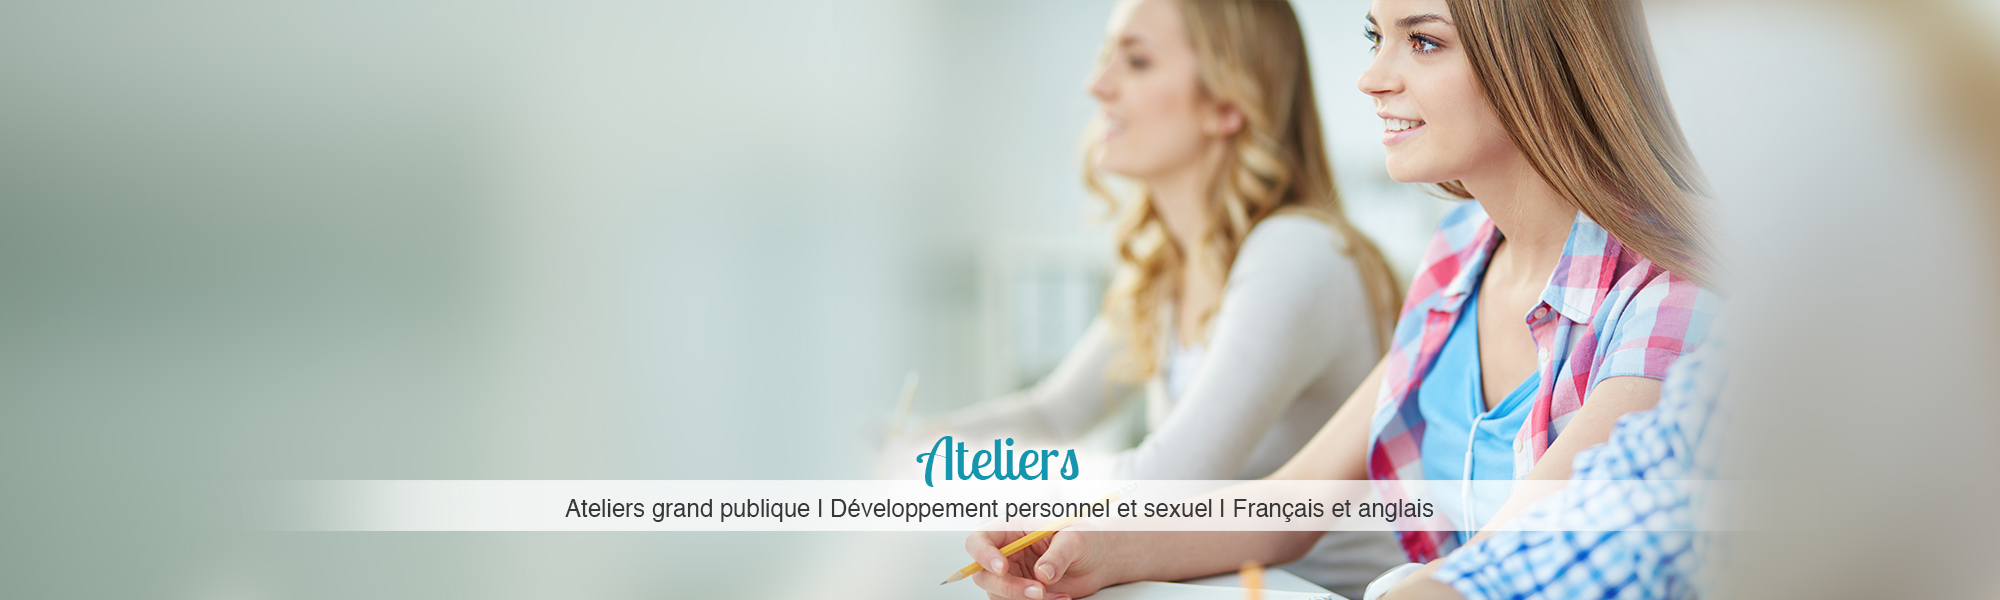 Ateliers : Ateliers grand publique | Développement personnel et sexuel | Français et anglais